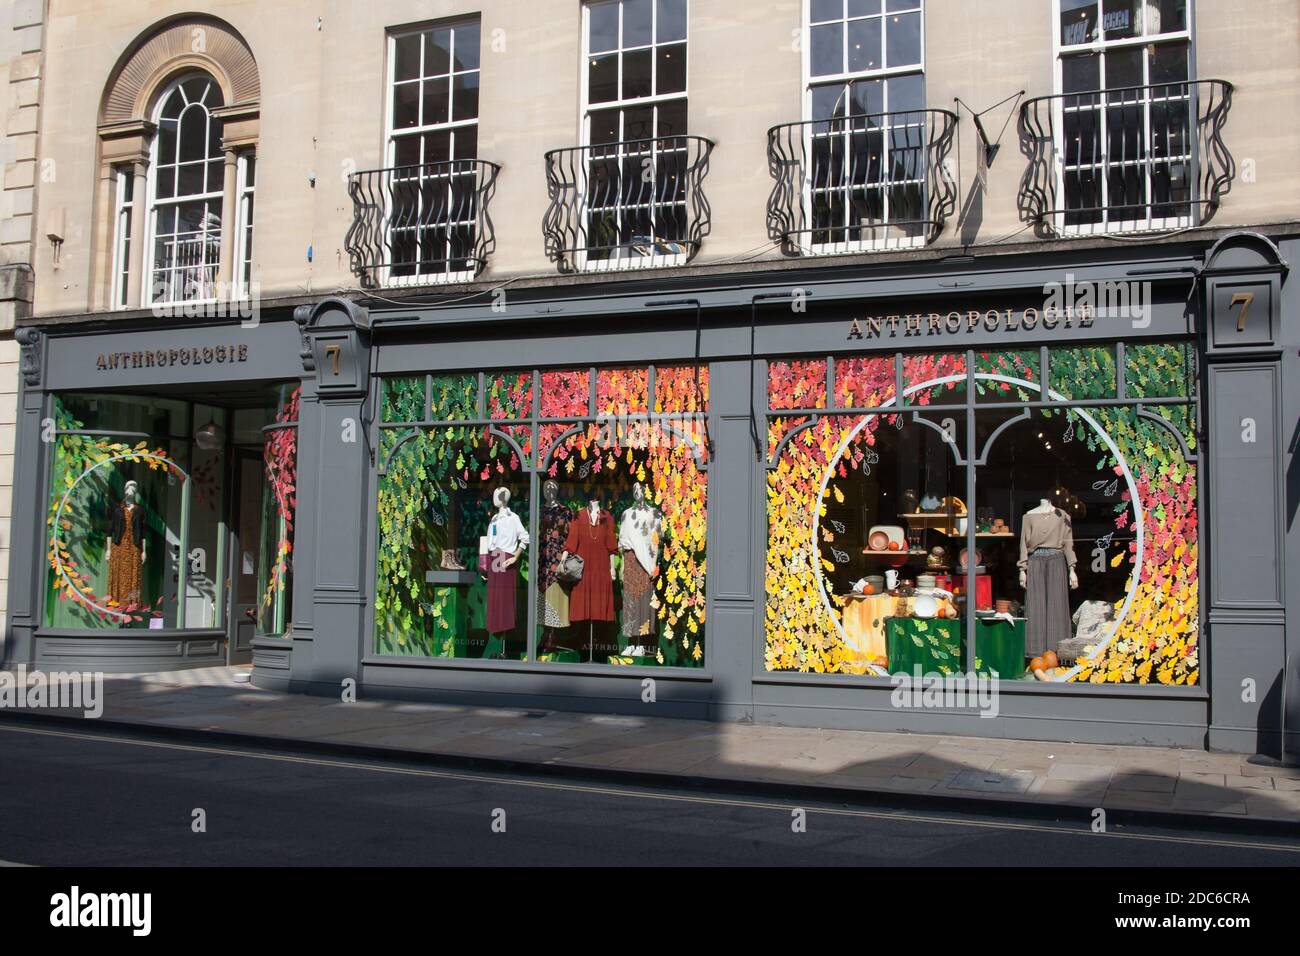 Il negozio Anthropologie nel centro di Oxford nel Regno Unito, preso il 15 settembre 2020 Foto Stock